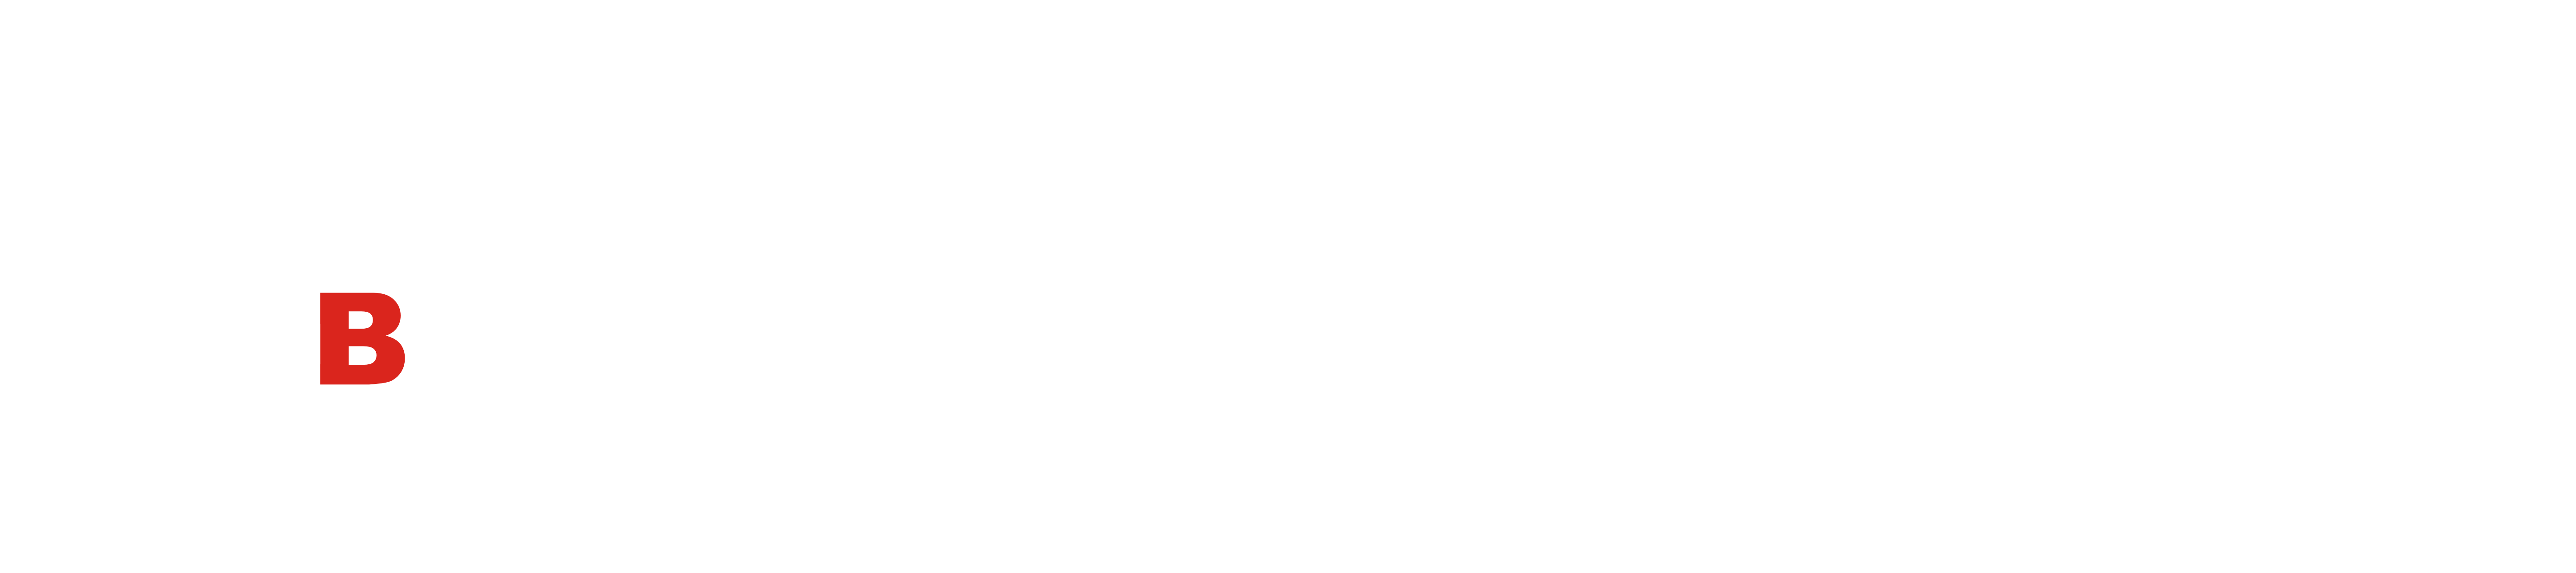 GrainBox.ru - Самогонные аппараты, товары для винокурения, пивоварения, виноделия в Рязани